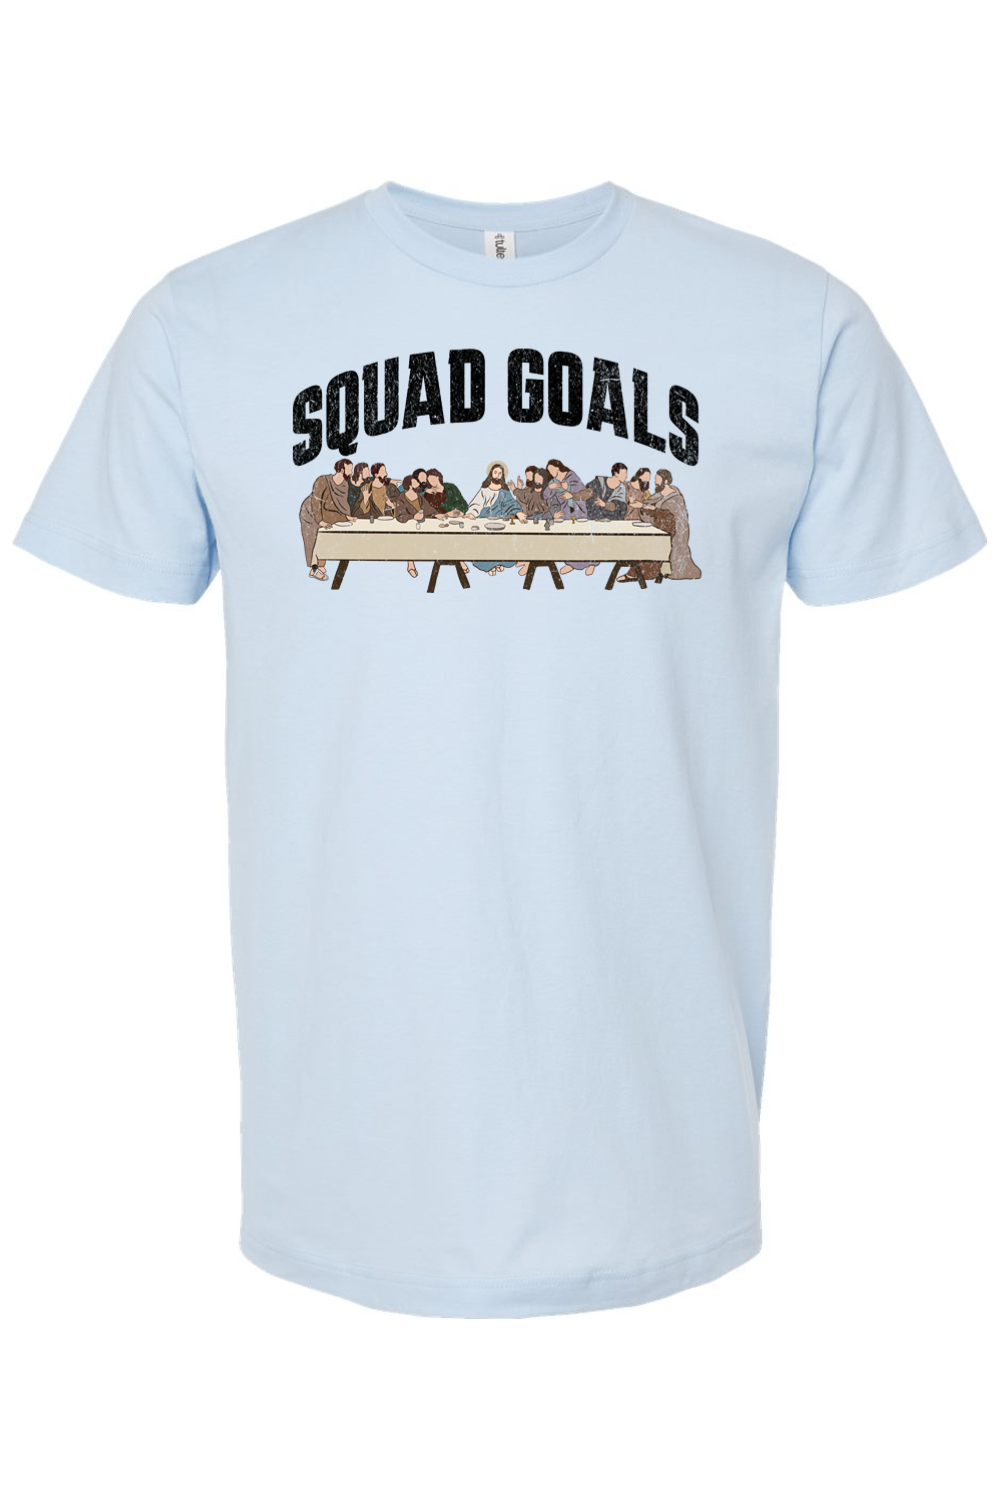 Squad Goals (Last Supper) - T-Shirt